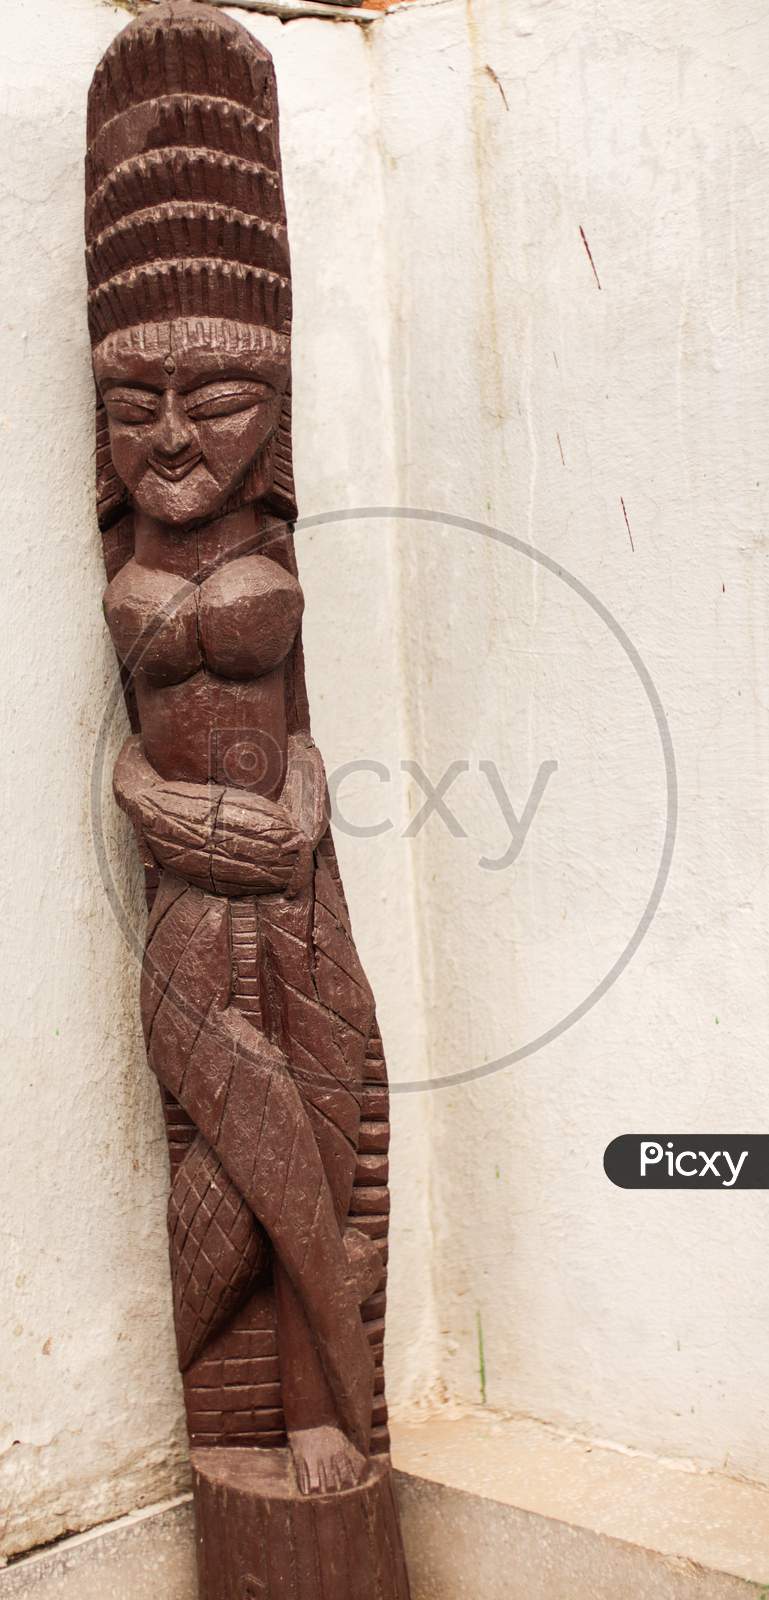 Exquisite wooden sculpture of Egyptian queen